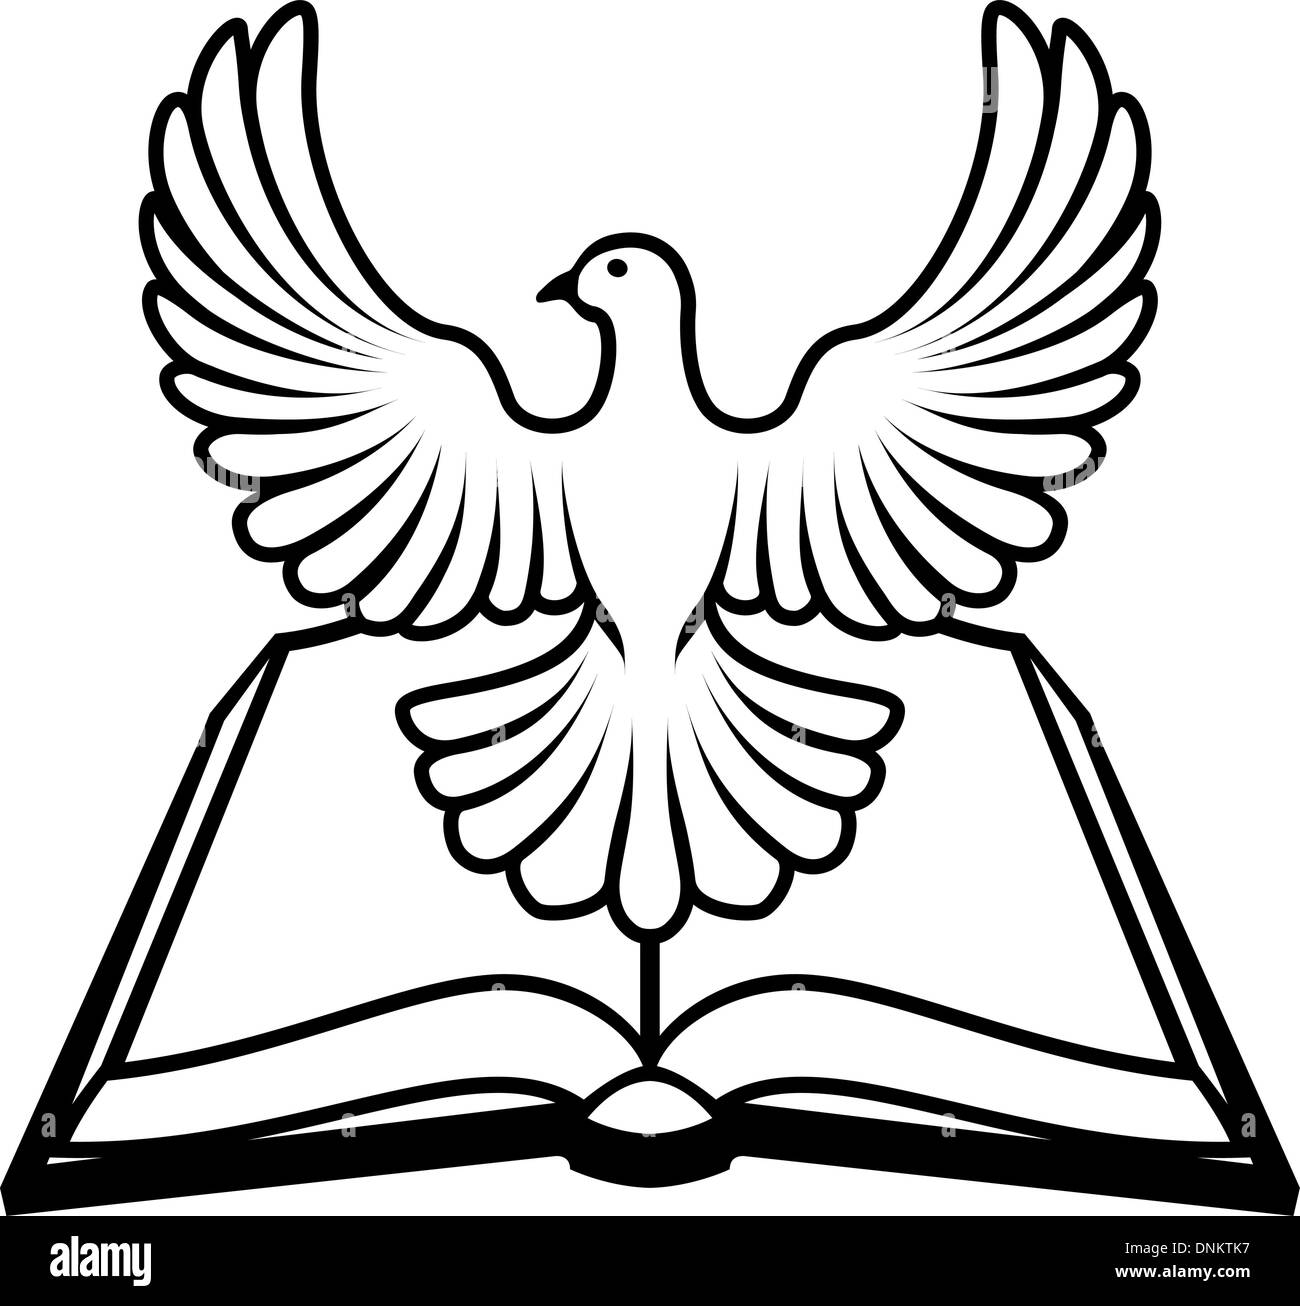 Bibbia cristiana con lo Spirito Santo in forma di colomba bianca. Illustrazione Vettoriale